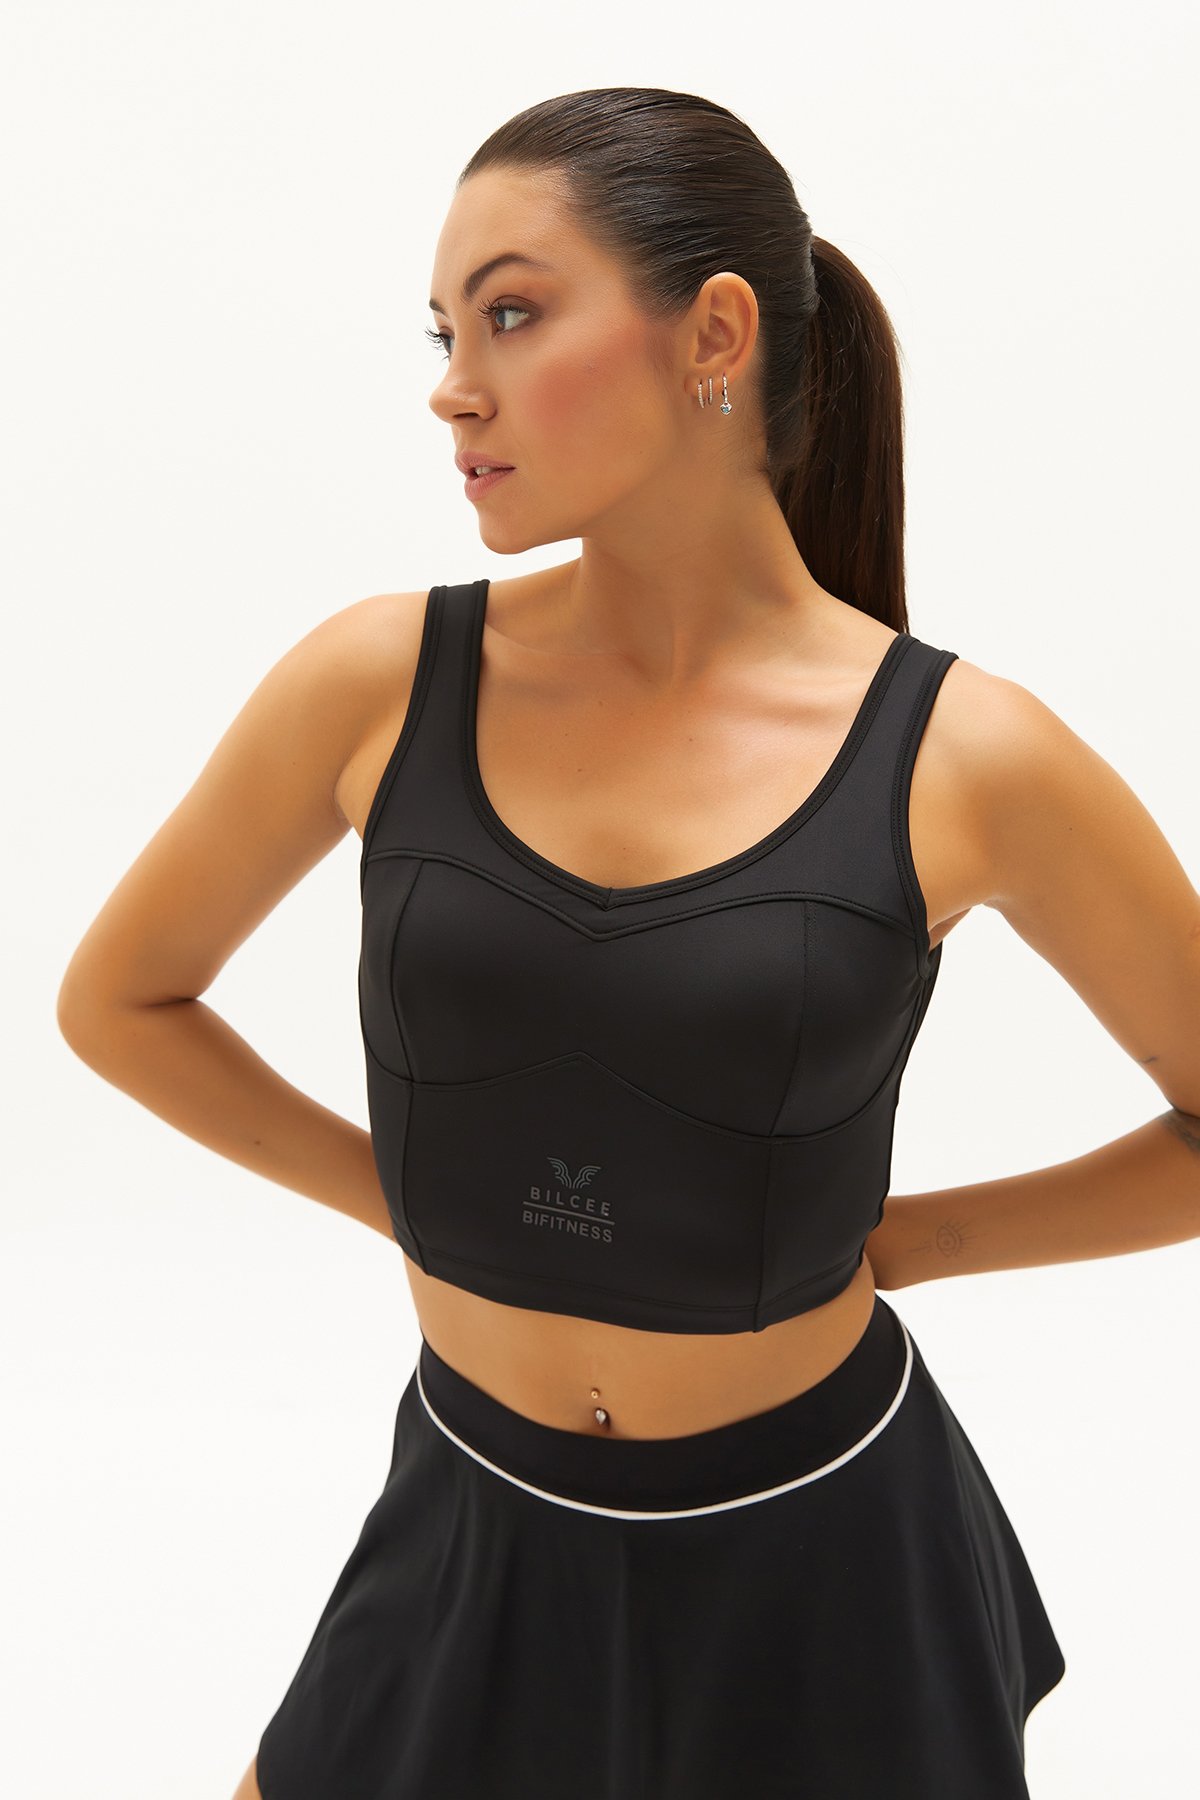 Kadın Siyah Fitness-Antrenman Spor Fashion Crop Top Toparlayıcı Bra Sporcu Sütyeni Büstiyer 0604